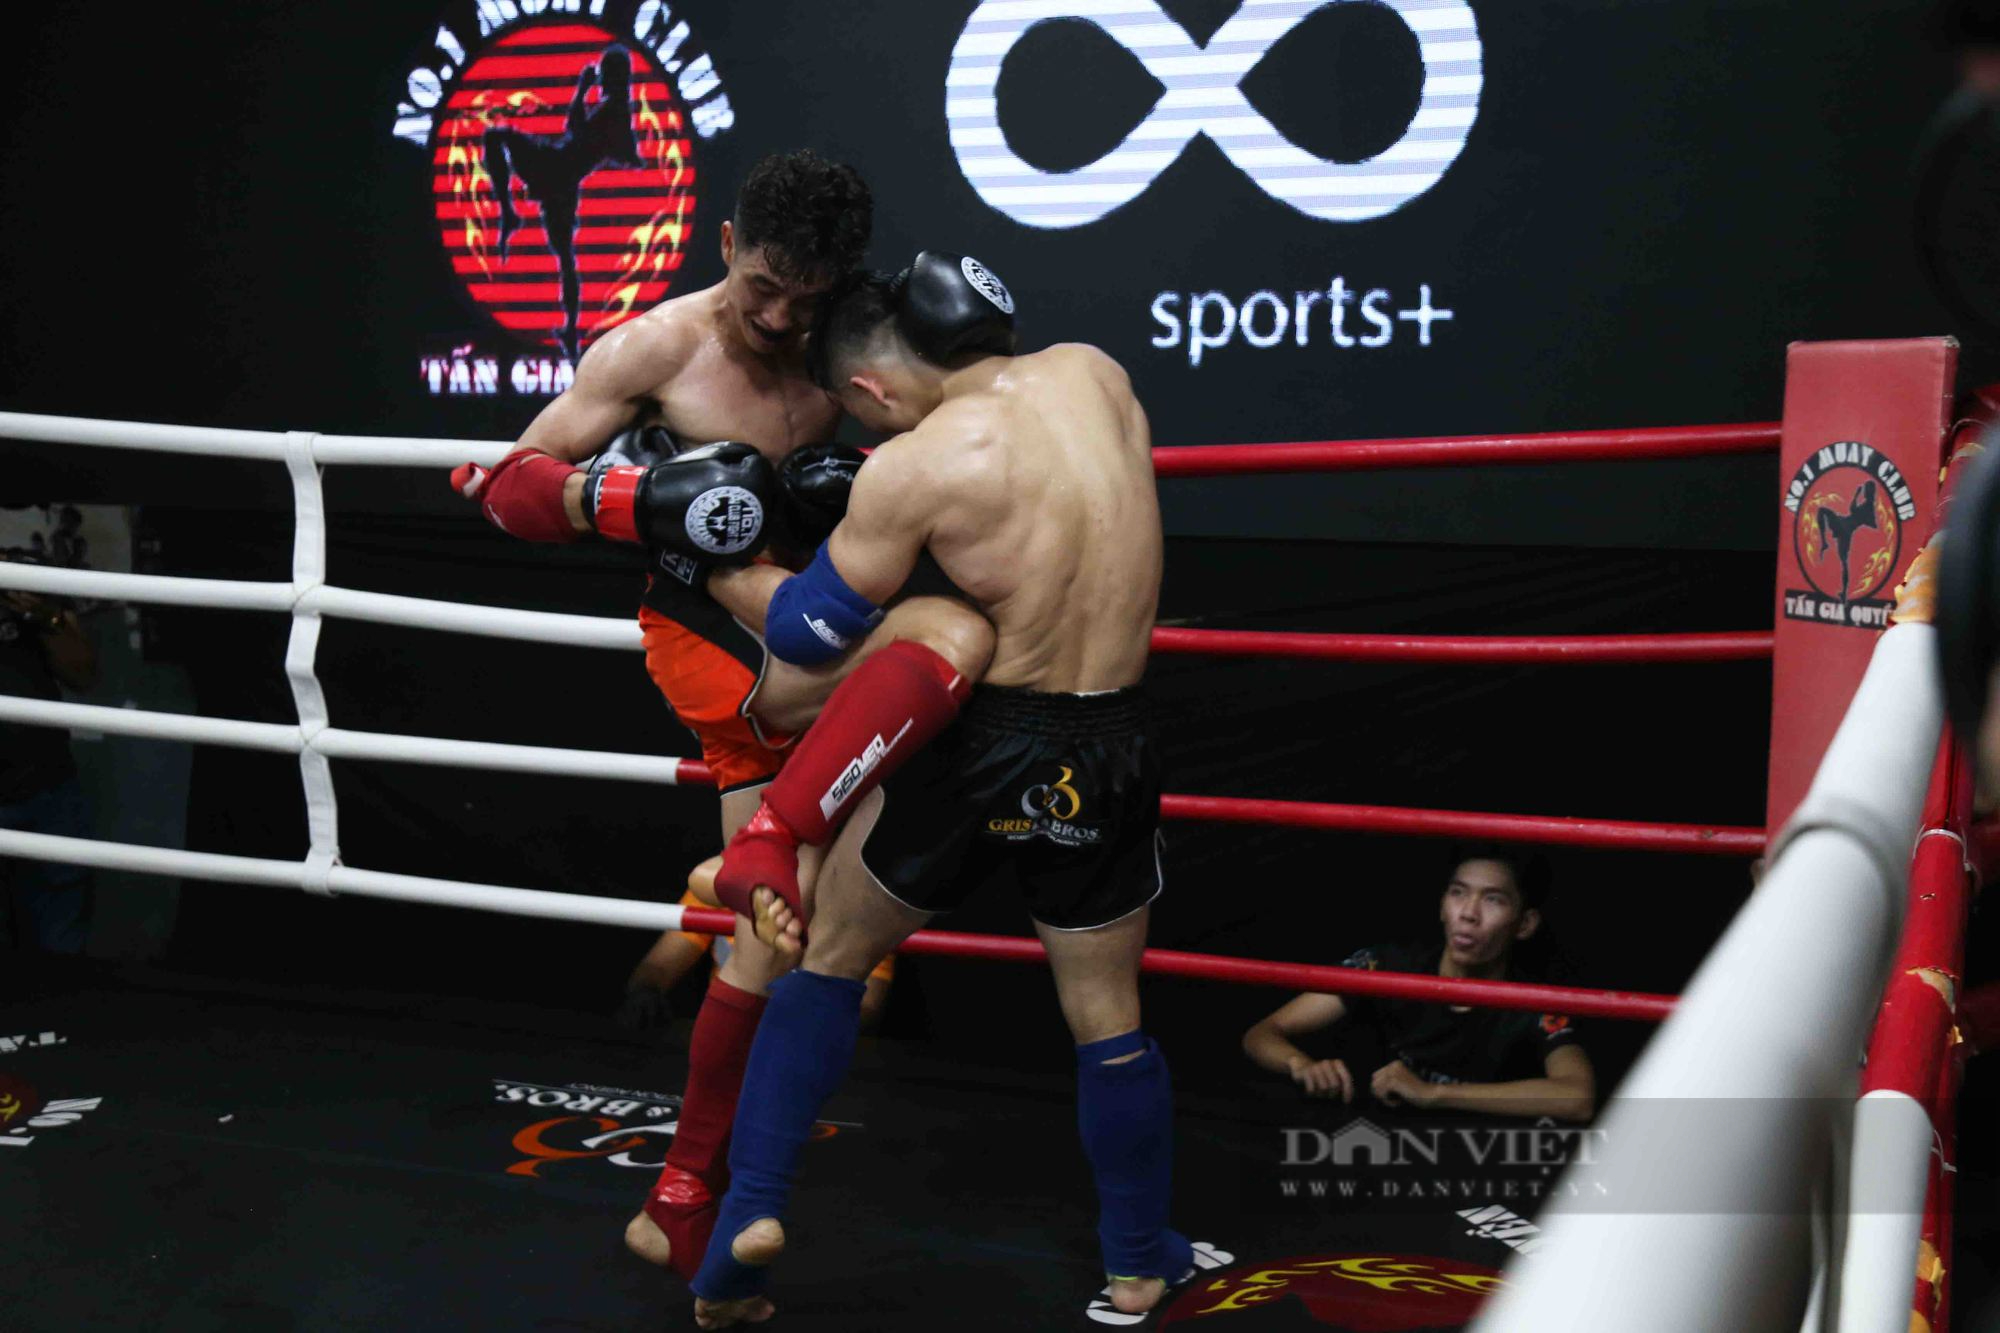 Vừa thắng giải MMA, Nguyễn Trần Duy Nhất thành “bầu show” giải võ - Ảnh 4.